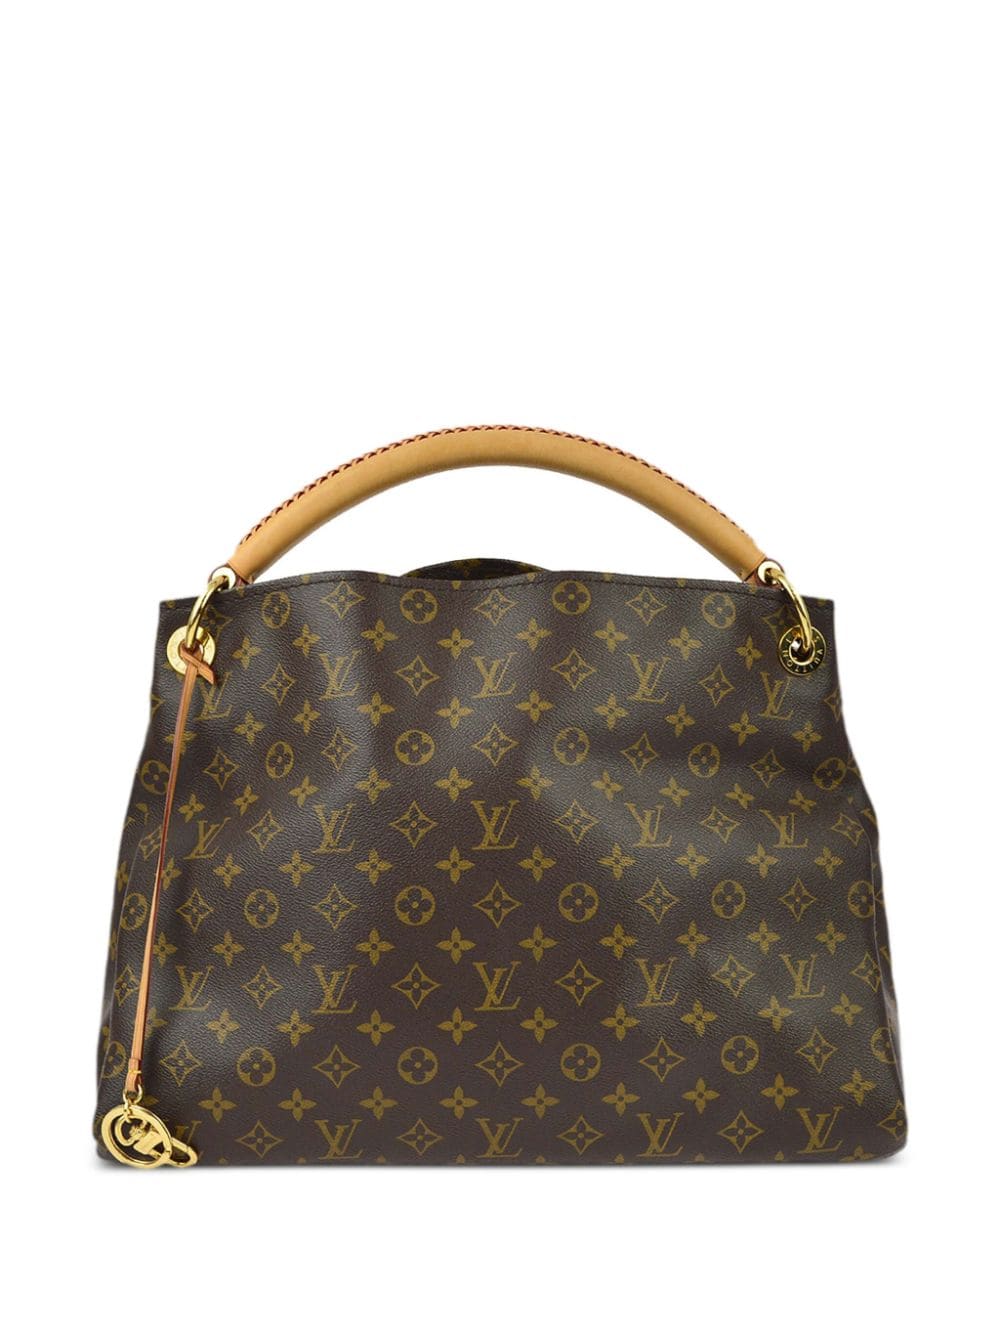 Louis Vuitton Pre-Owned 2018 Artsy MM handbag - Brown von Louis Vuitton Pre-Owned